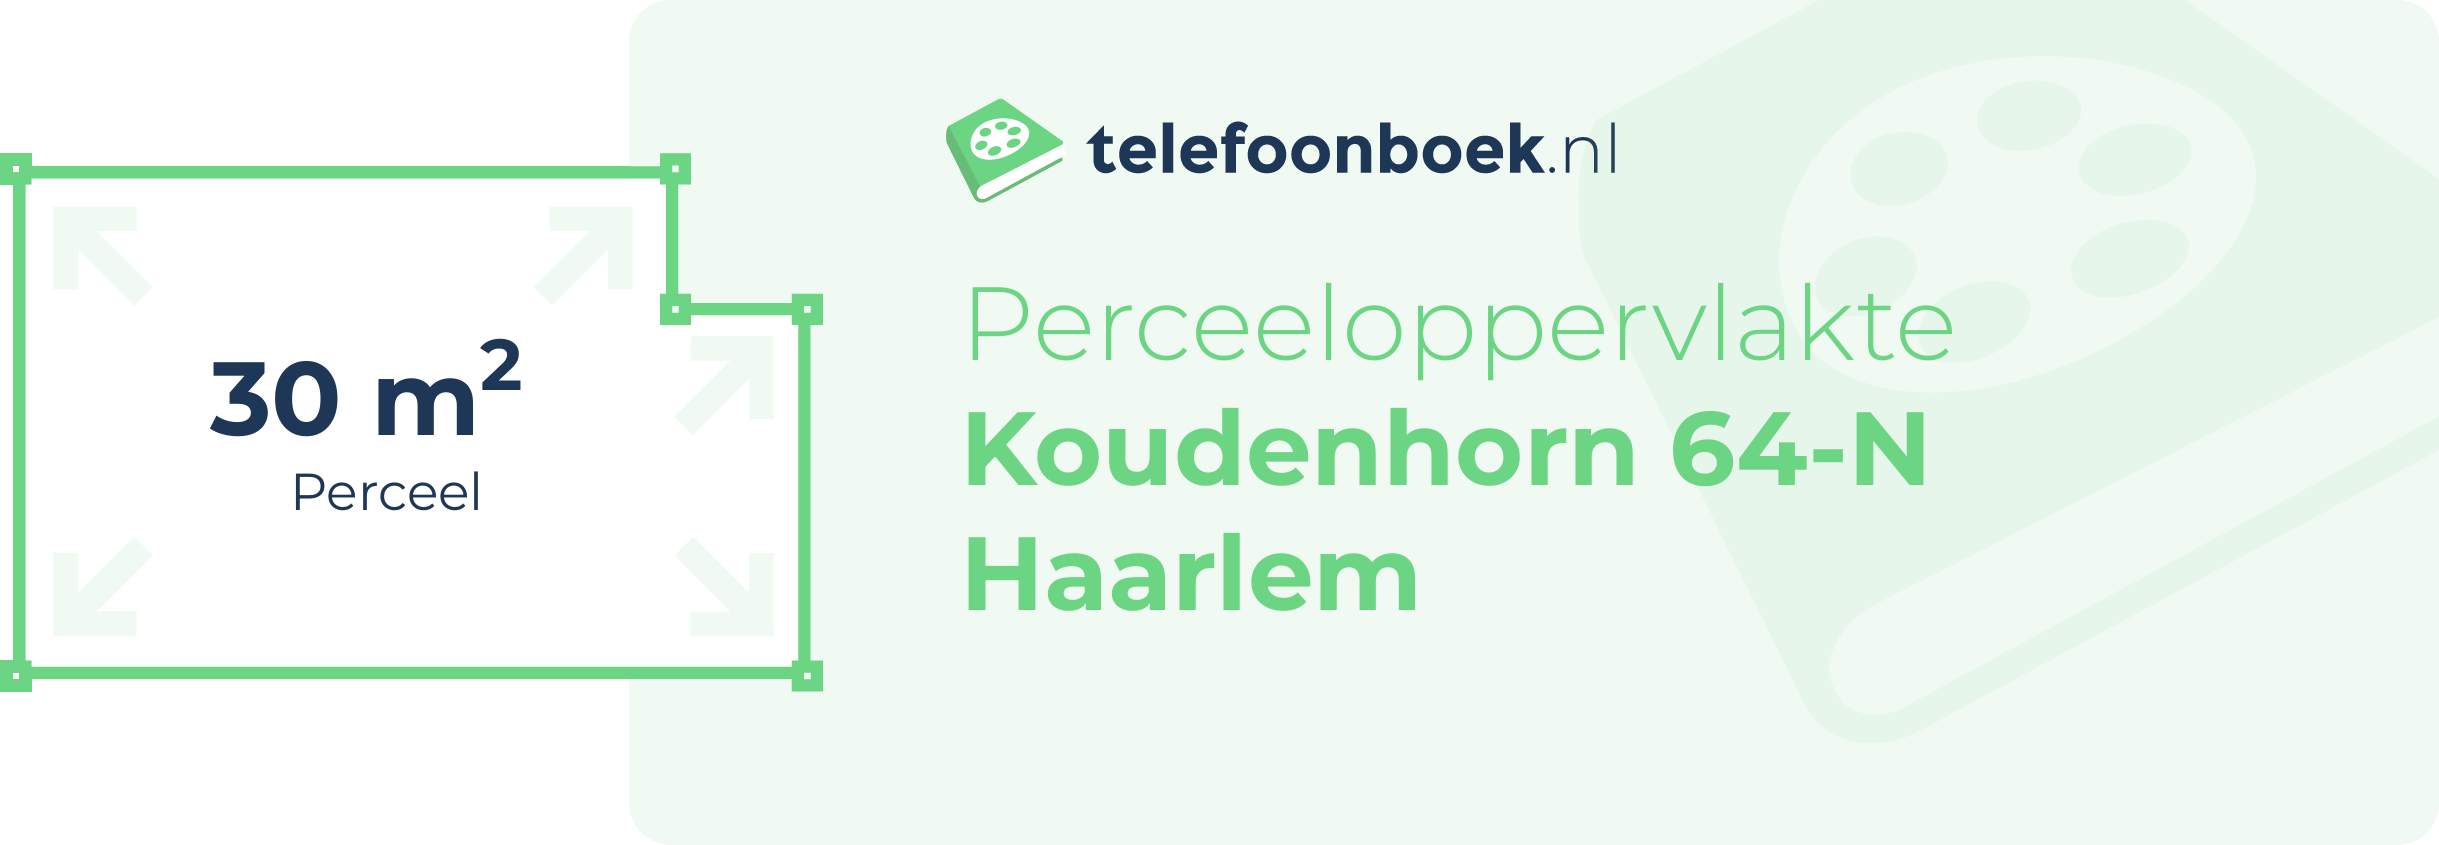 Perceeloppervlakte Koudenhorn 64-N Haarlem